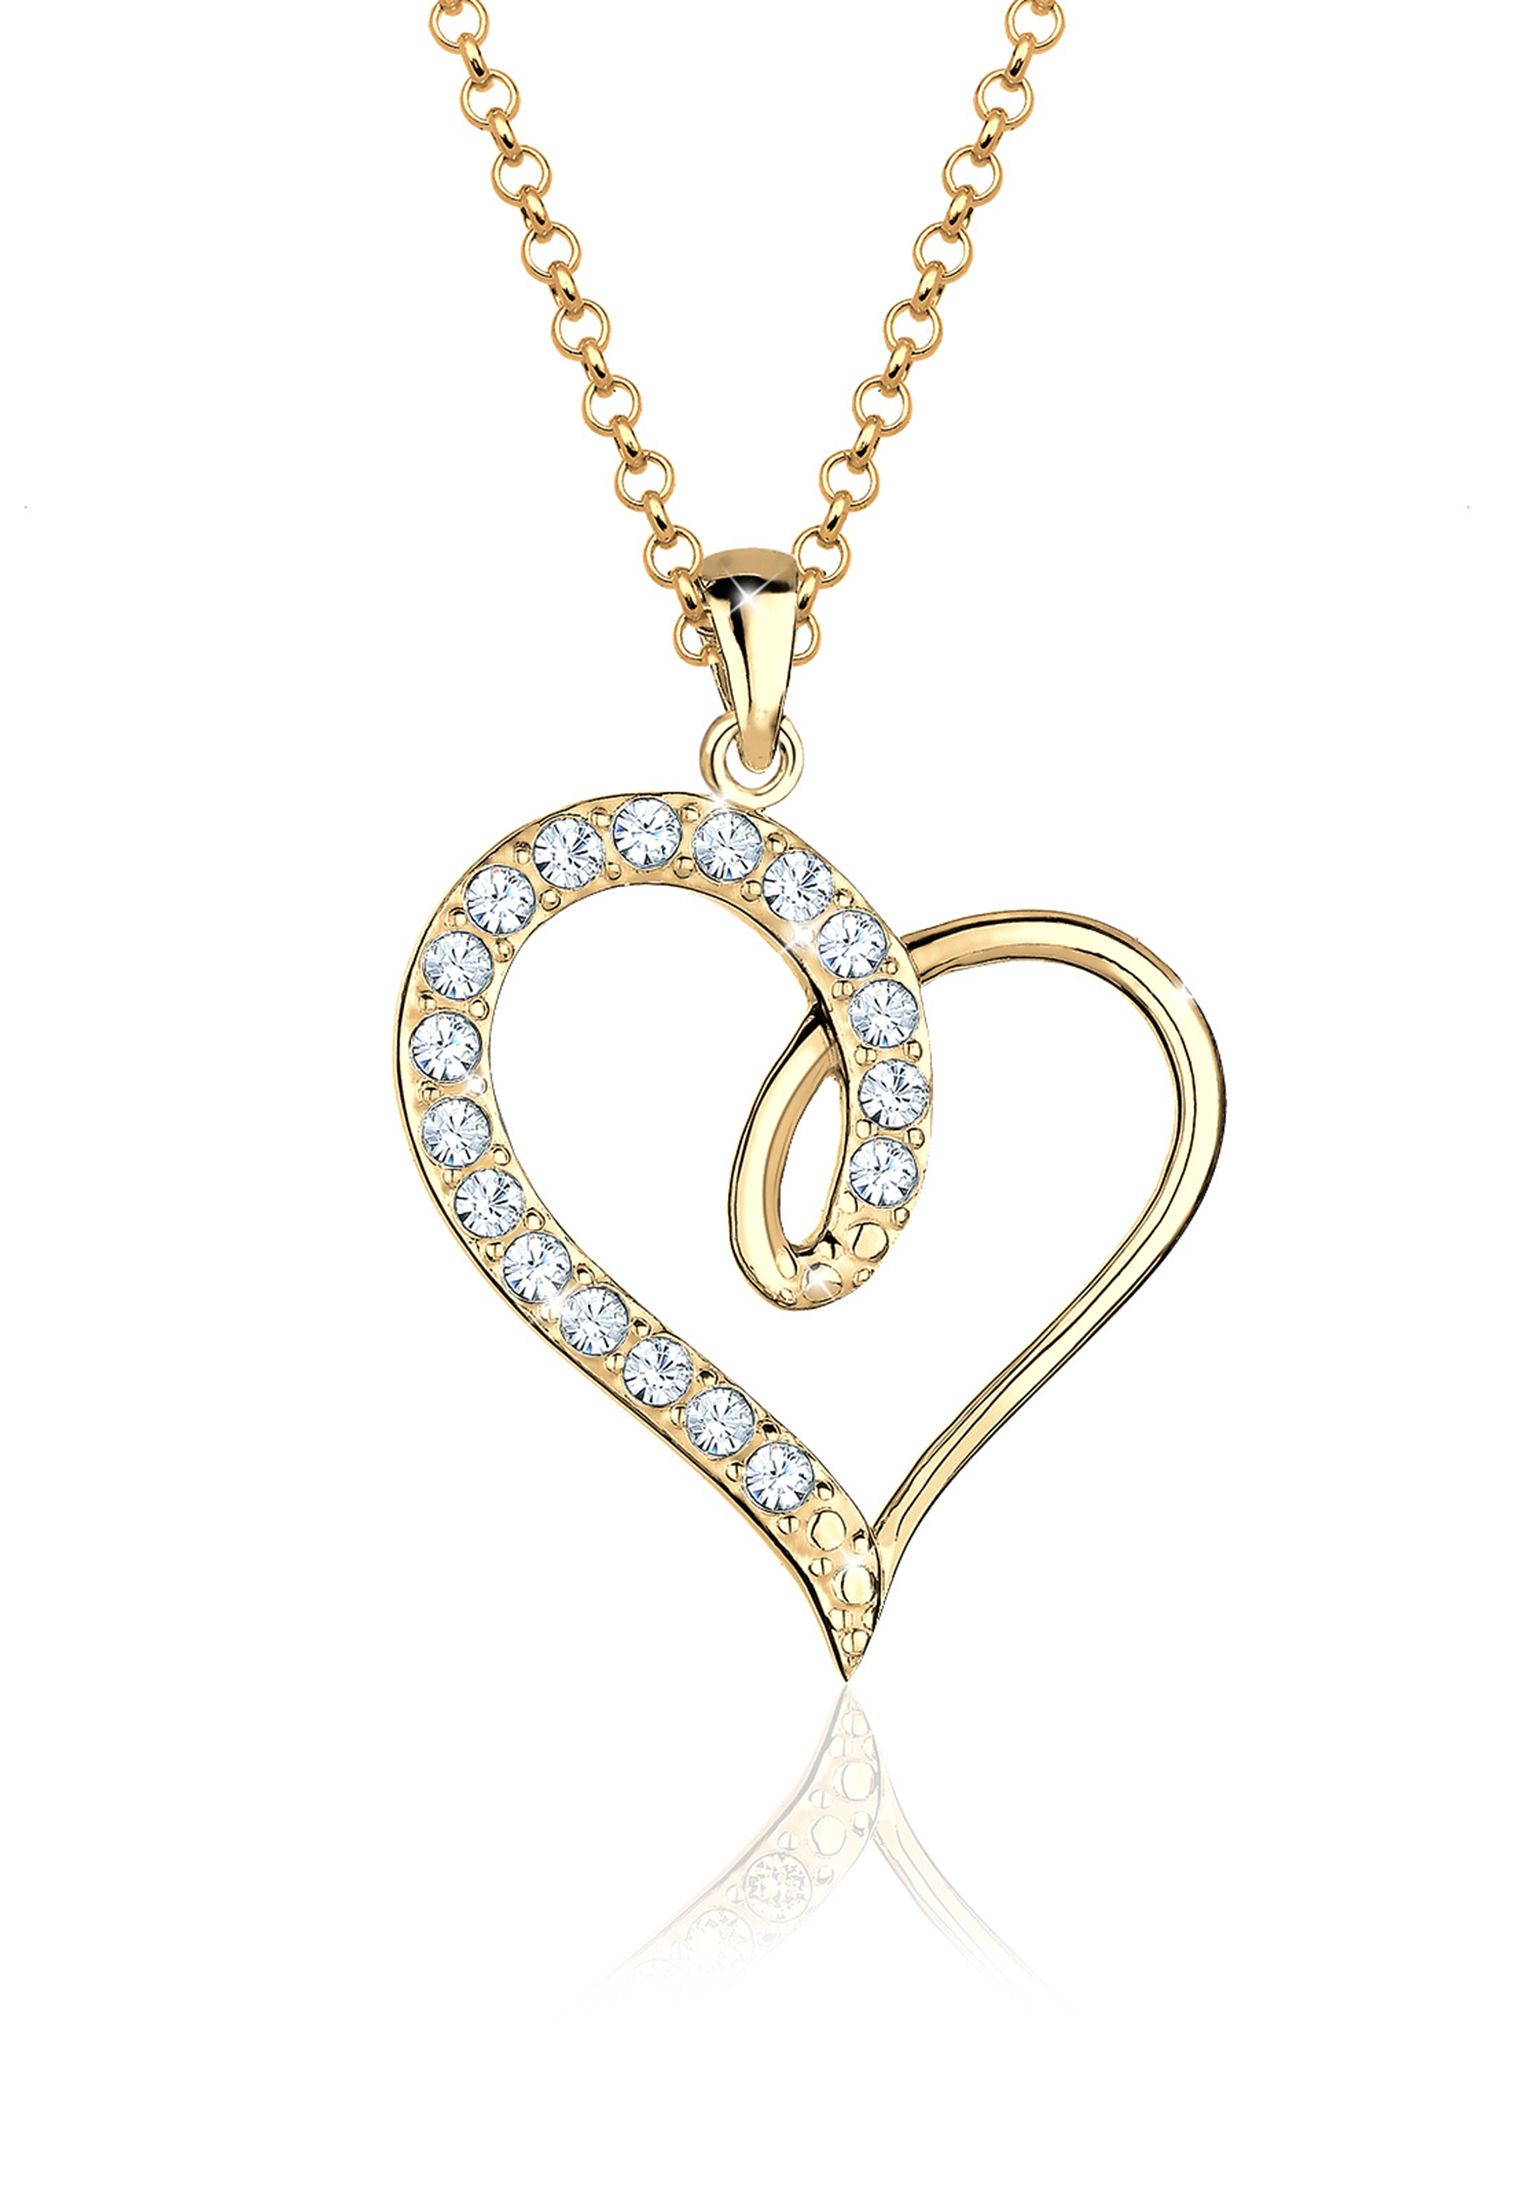 Halskette Herz | Kristall ( Weiß ) | 925 Sterling Silber vergoldet